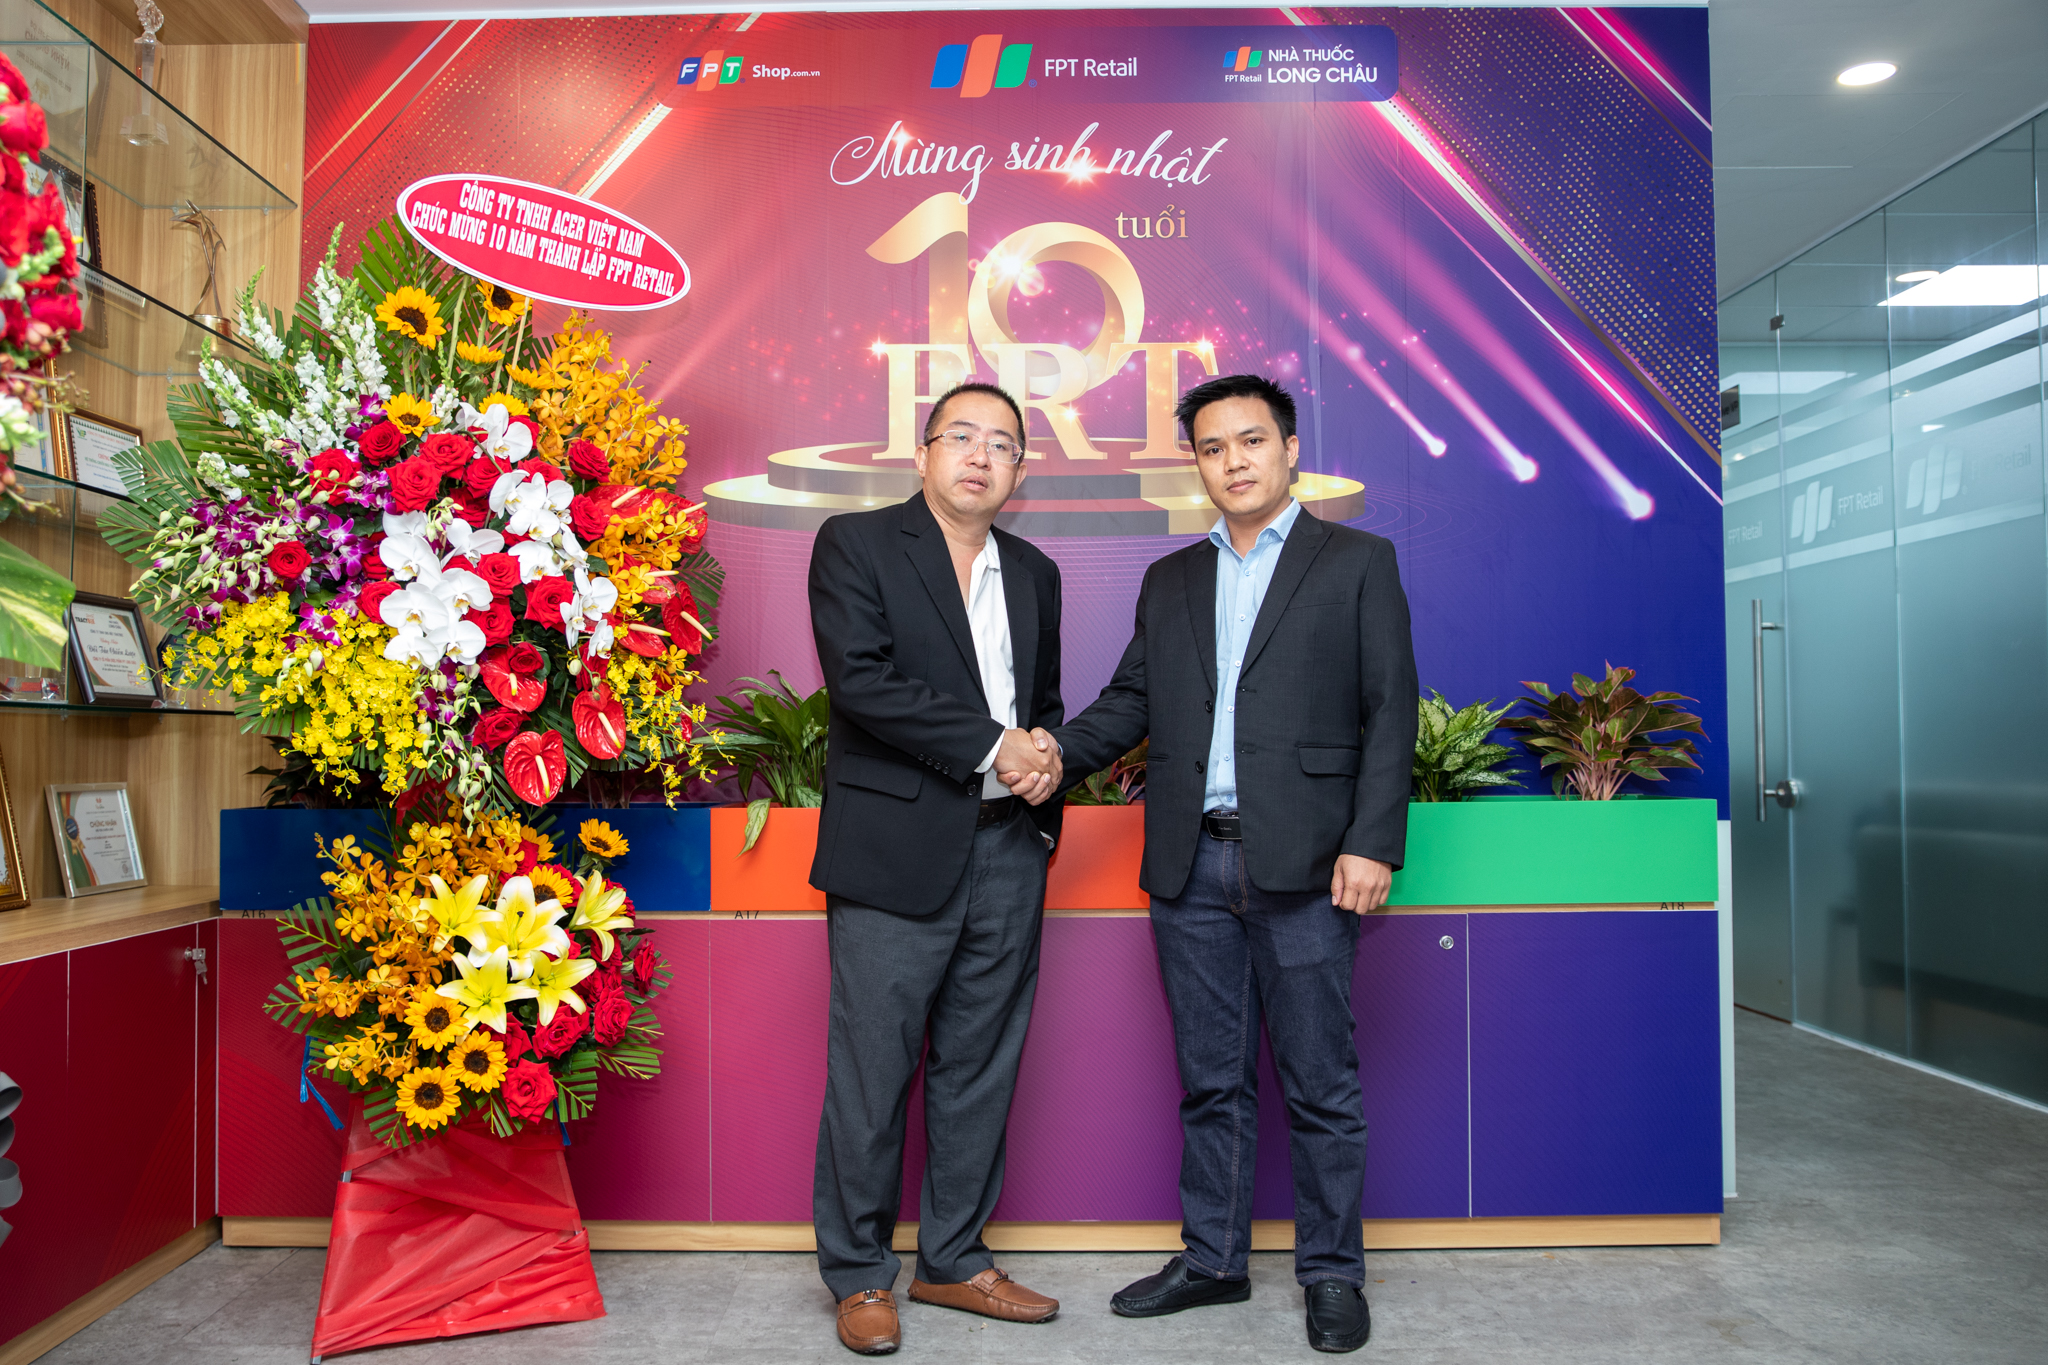 FPT Long Châu tung khuyến mãi khủng giảm đến 50 mừng sinh nhật FPT Retail  10 tuổi